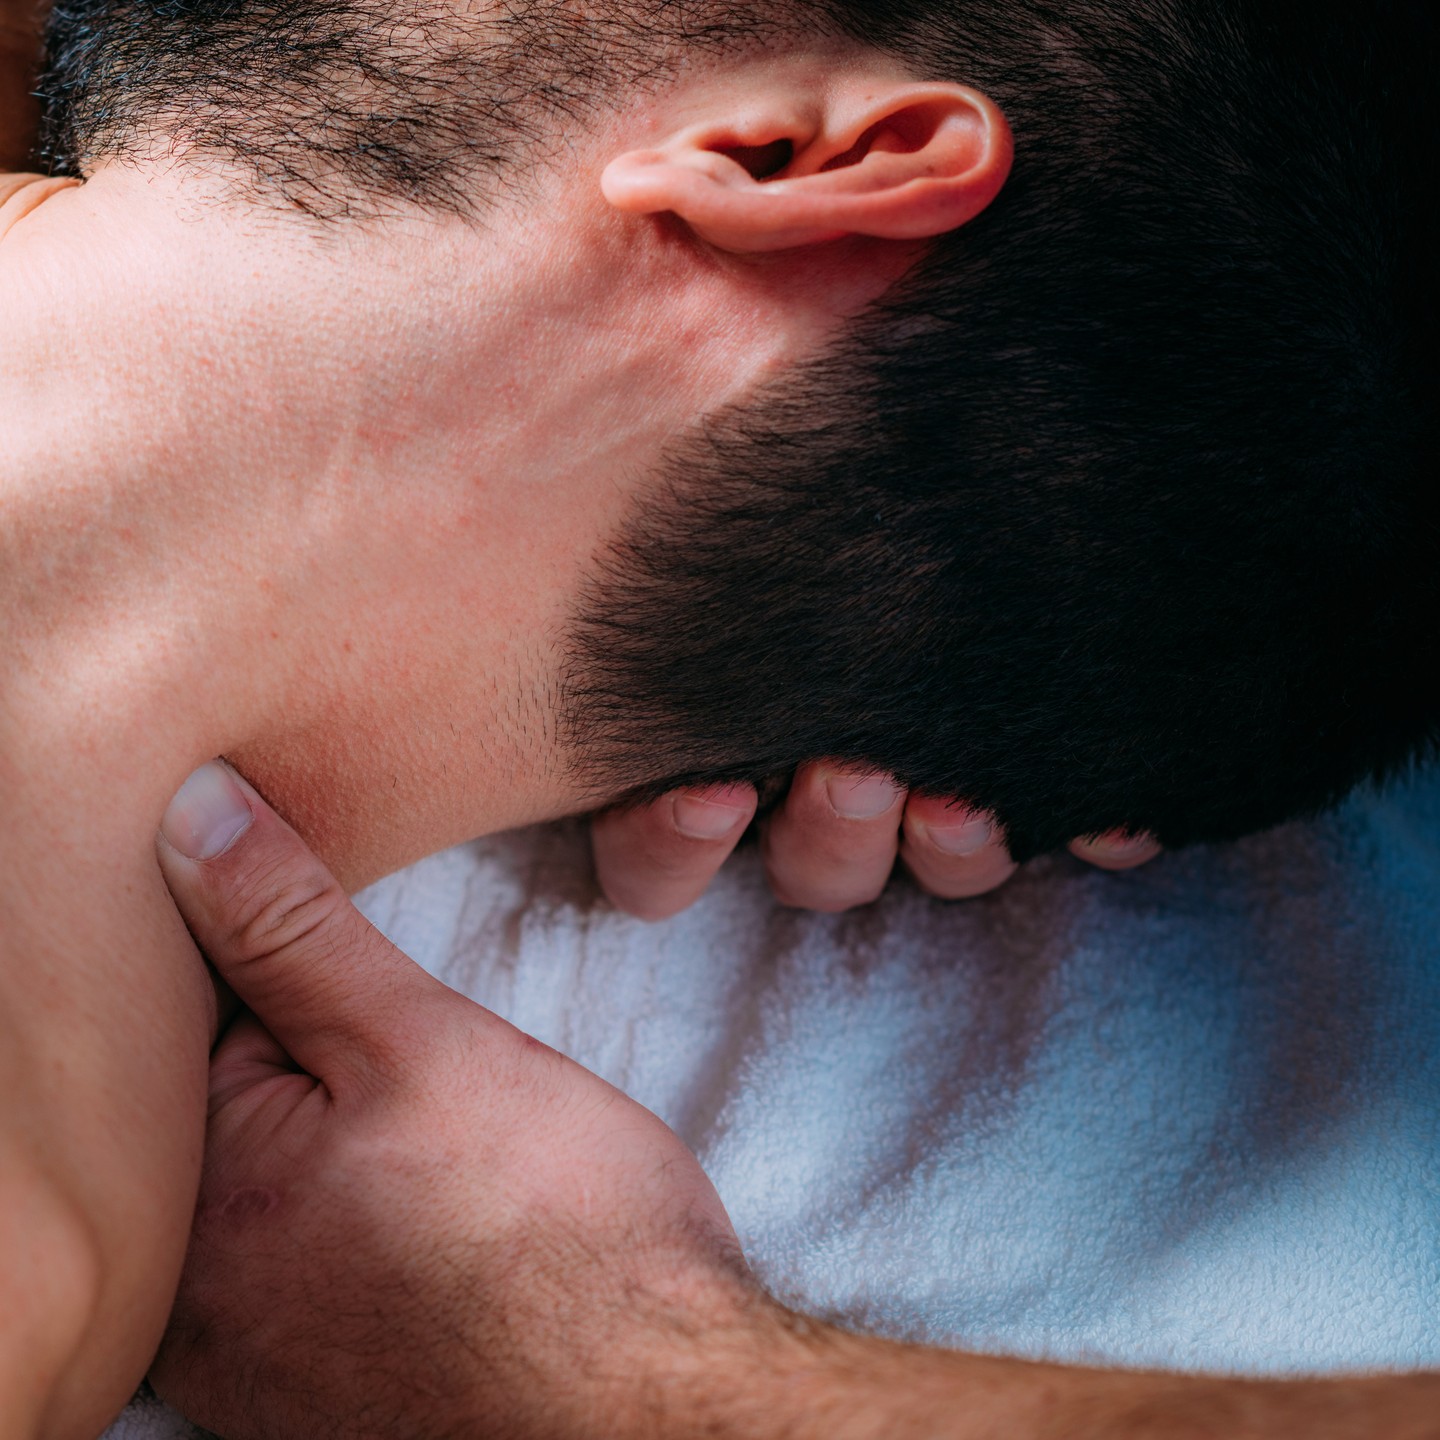 Neck and Shoulder Massage